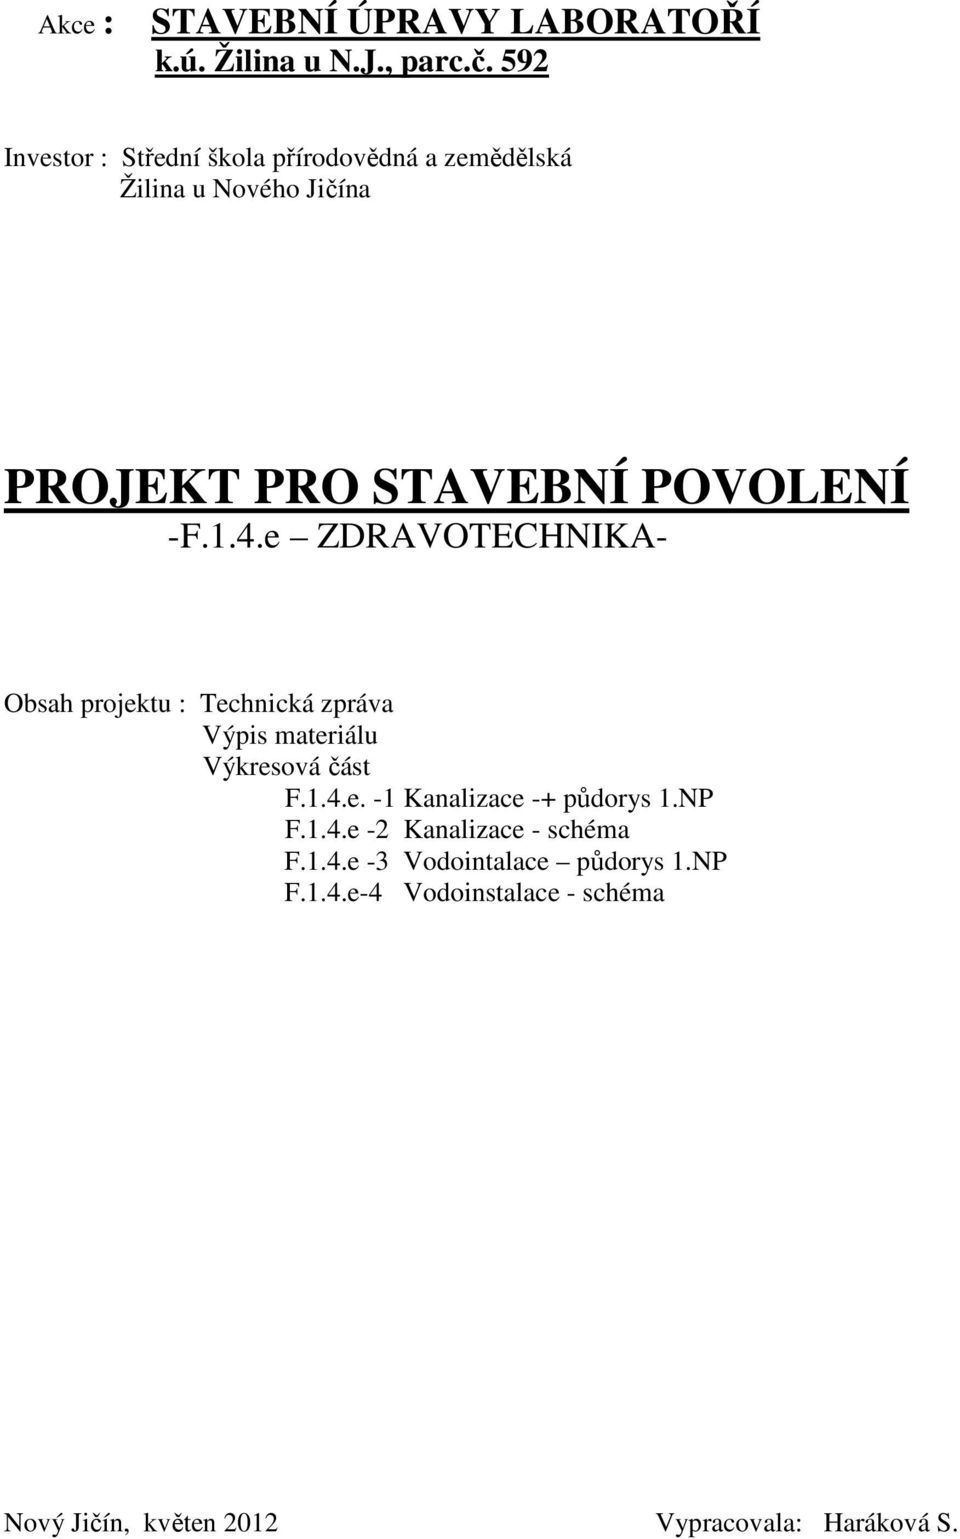 1.4.e ZDRAVOTECHNIKA- Obsah projektu : Technická zpráva Výpis materiálu Výkresová část F.1.4.e. -1 Kanalizace -+ půdorys 1.